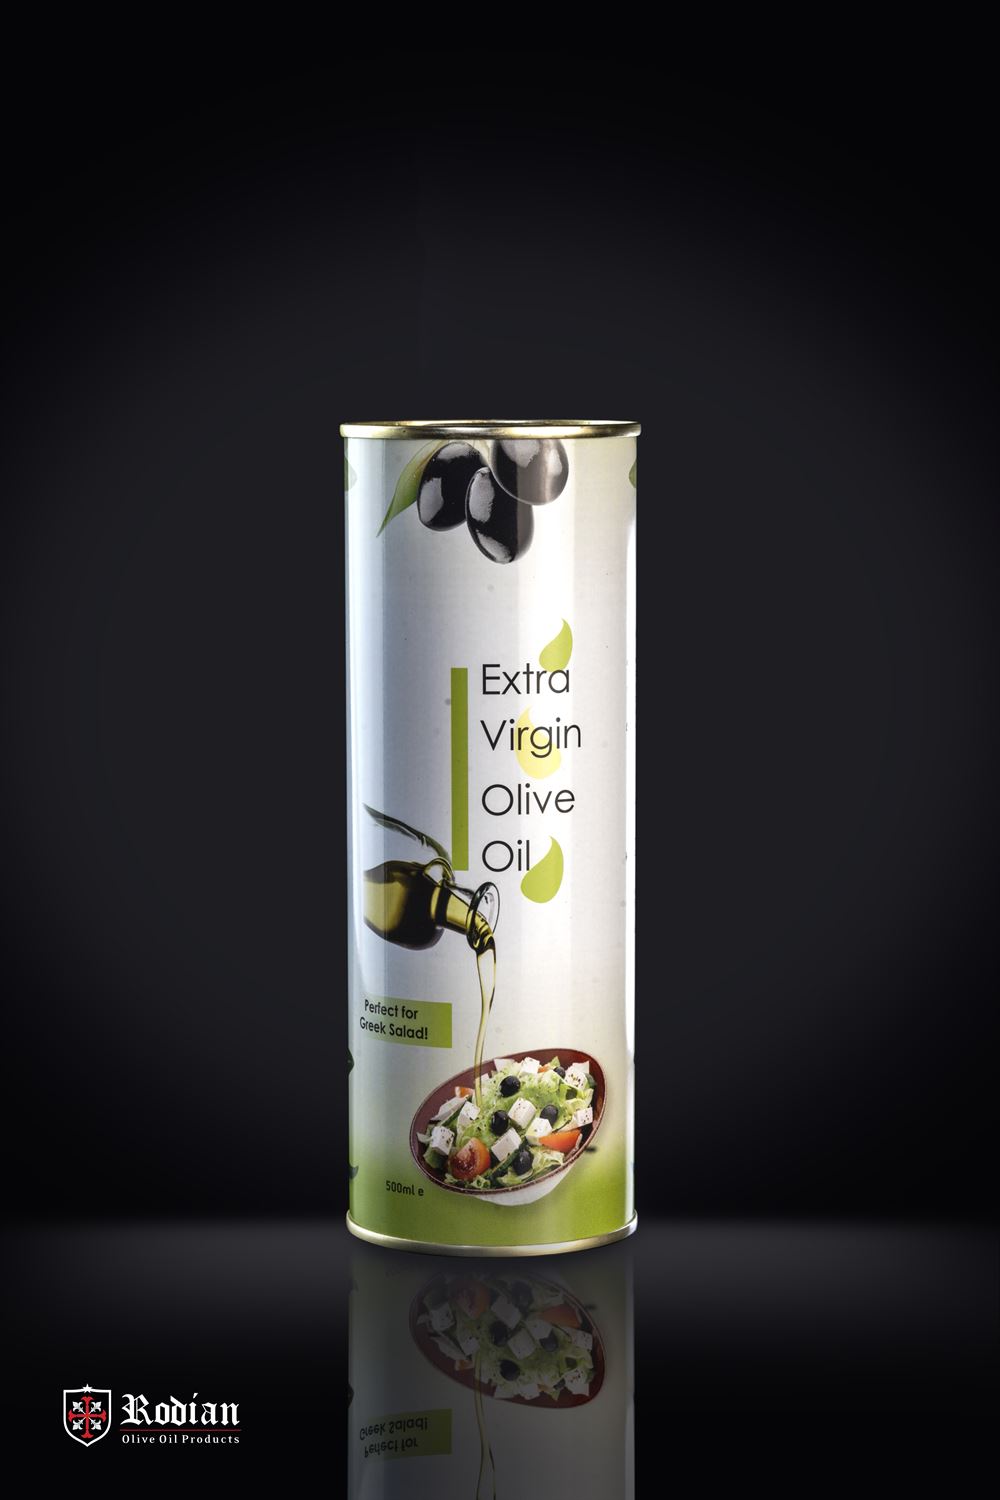 Rodian extra virgin olive oil metal tin 500ml - greek salad